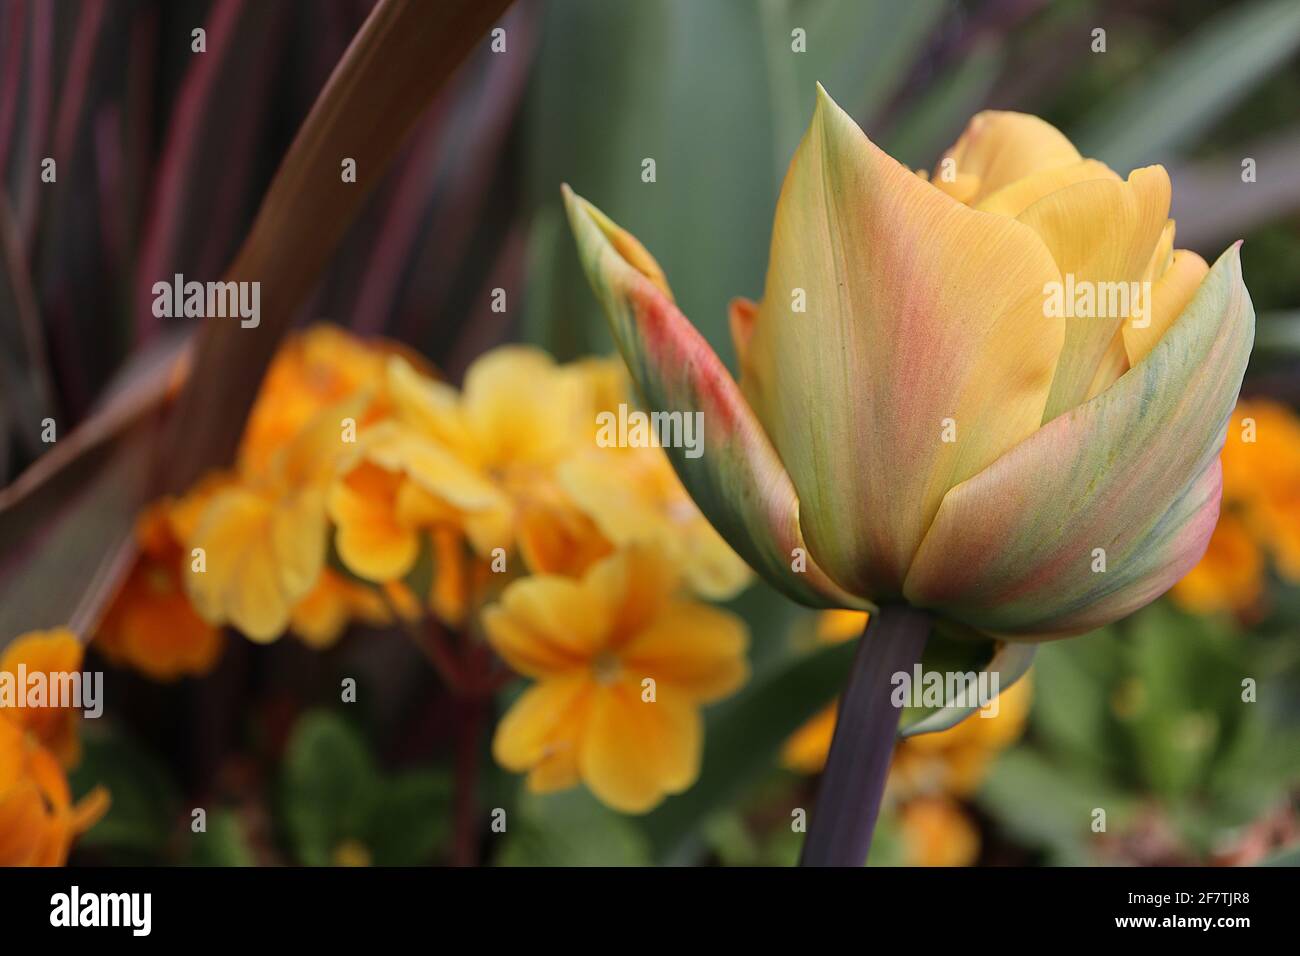 Tulipa ‘Monte Orange’ Double Early 2 Monte Orange tulipe – fleurs jaunes orange avec des stries vertes, rouges et orange, tige pourpre. Banque D'Images